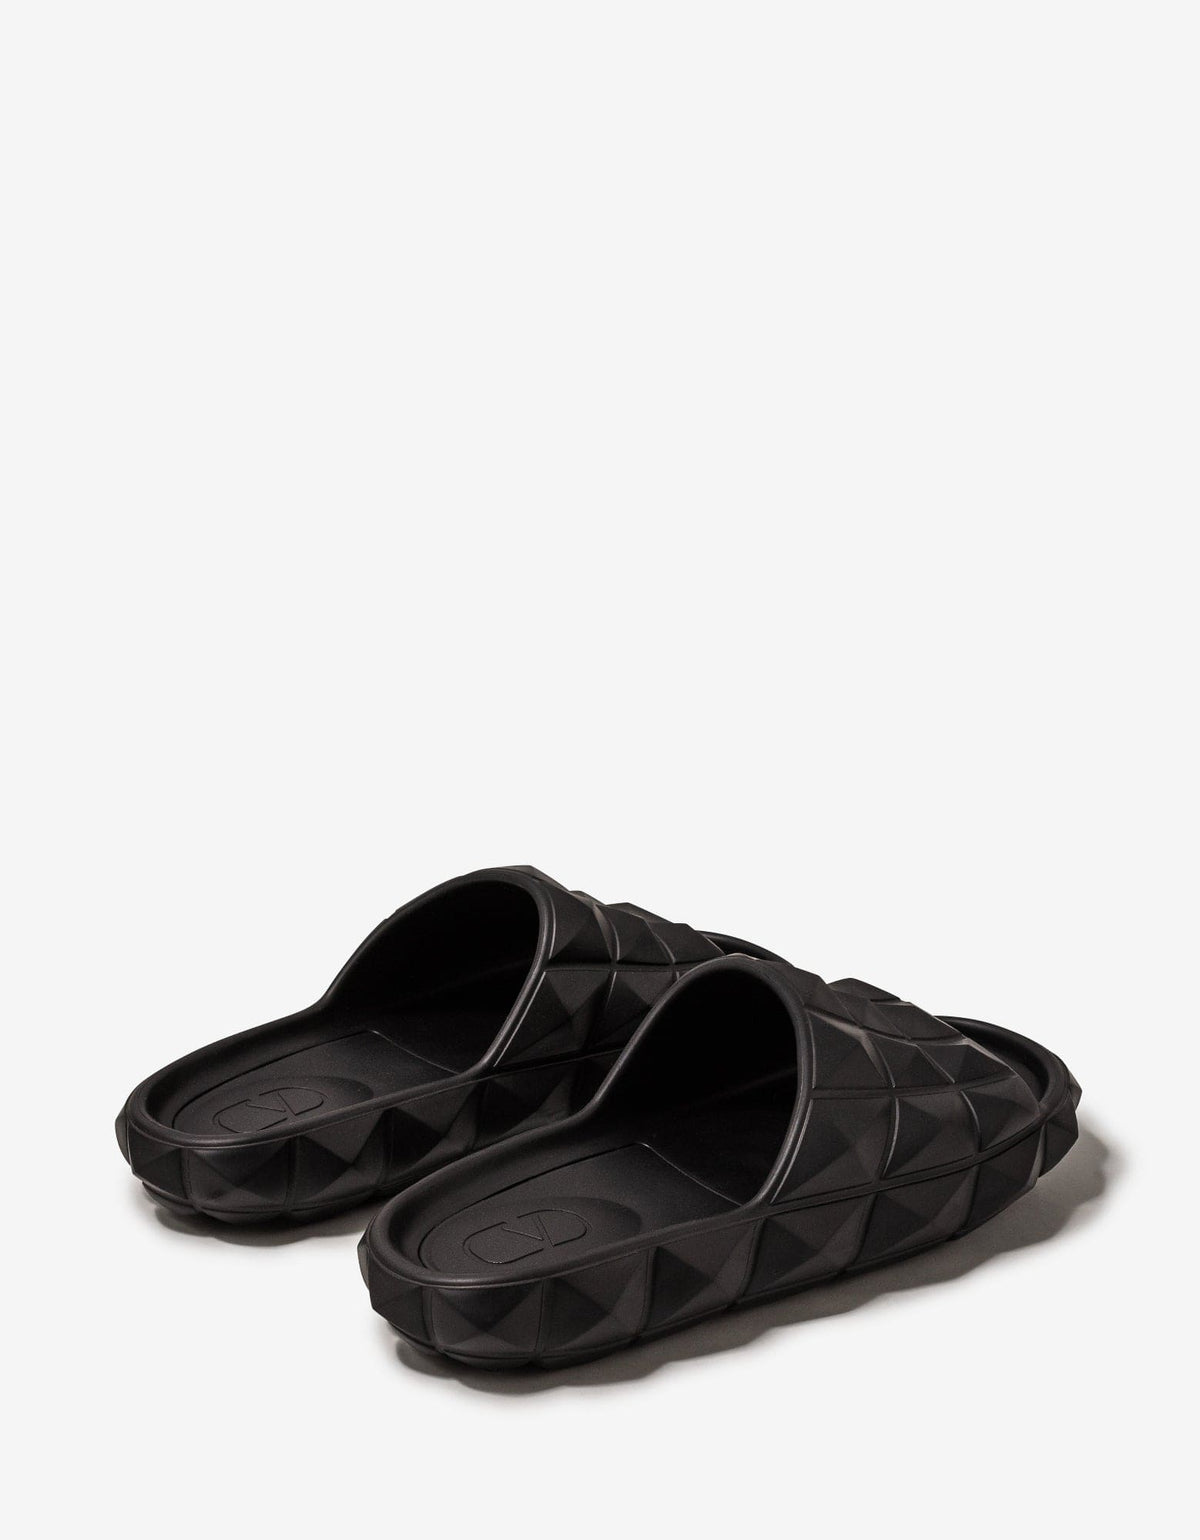 Valentino Garavani Black Roman Stud Turtle Slide Sandals